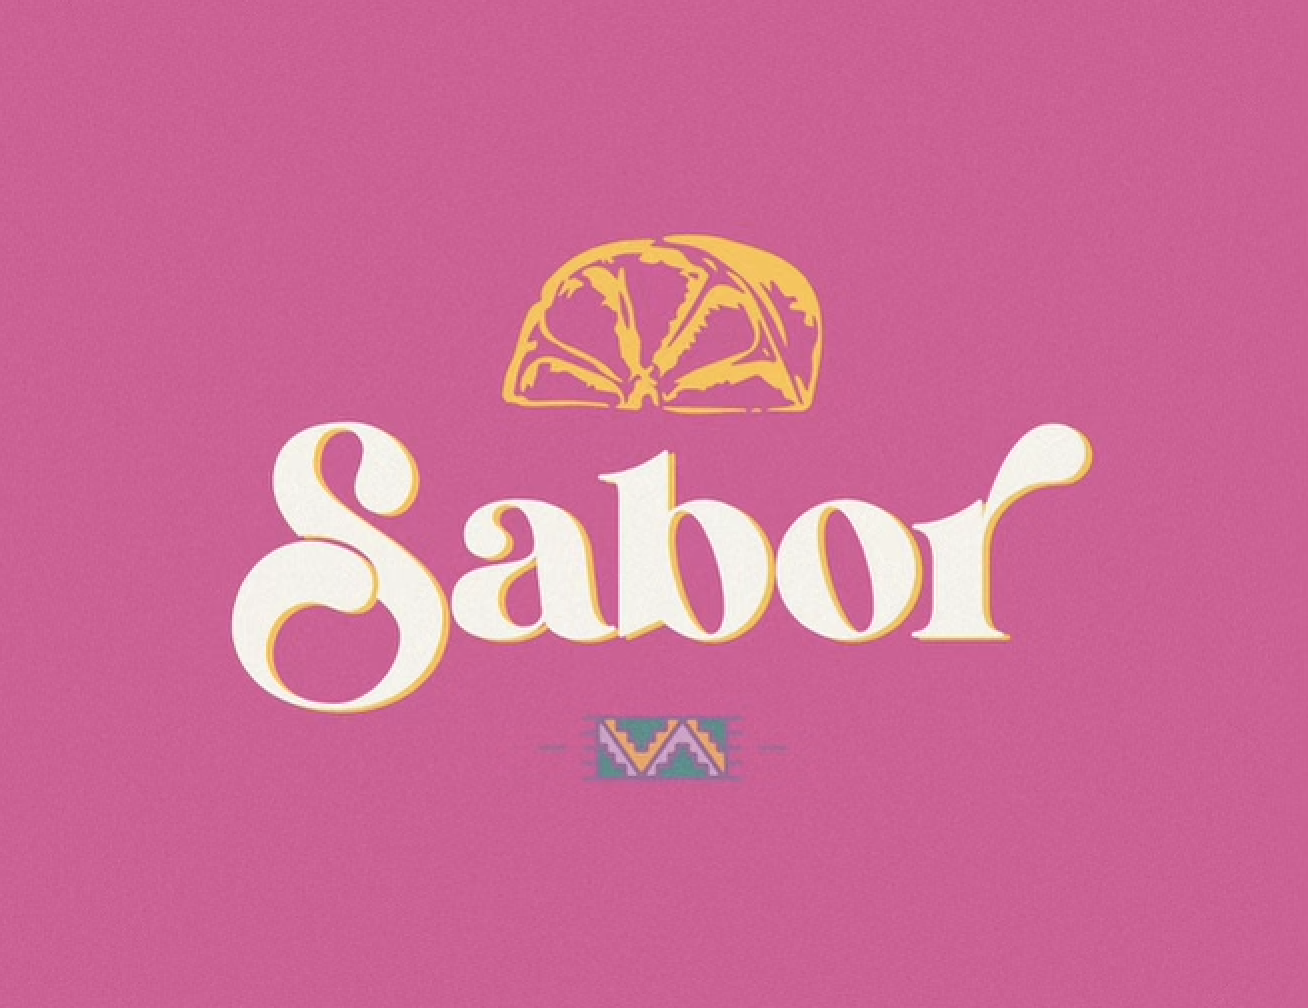 Sabor Restaurant